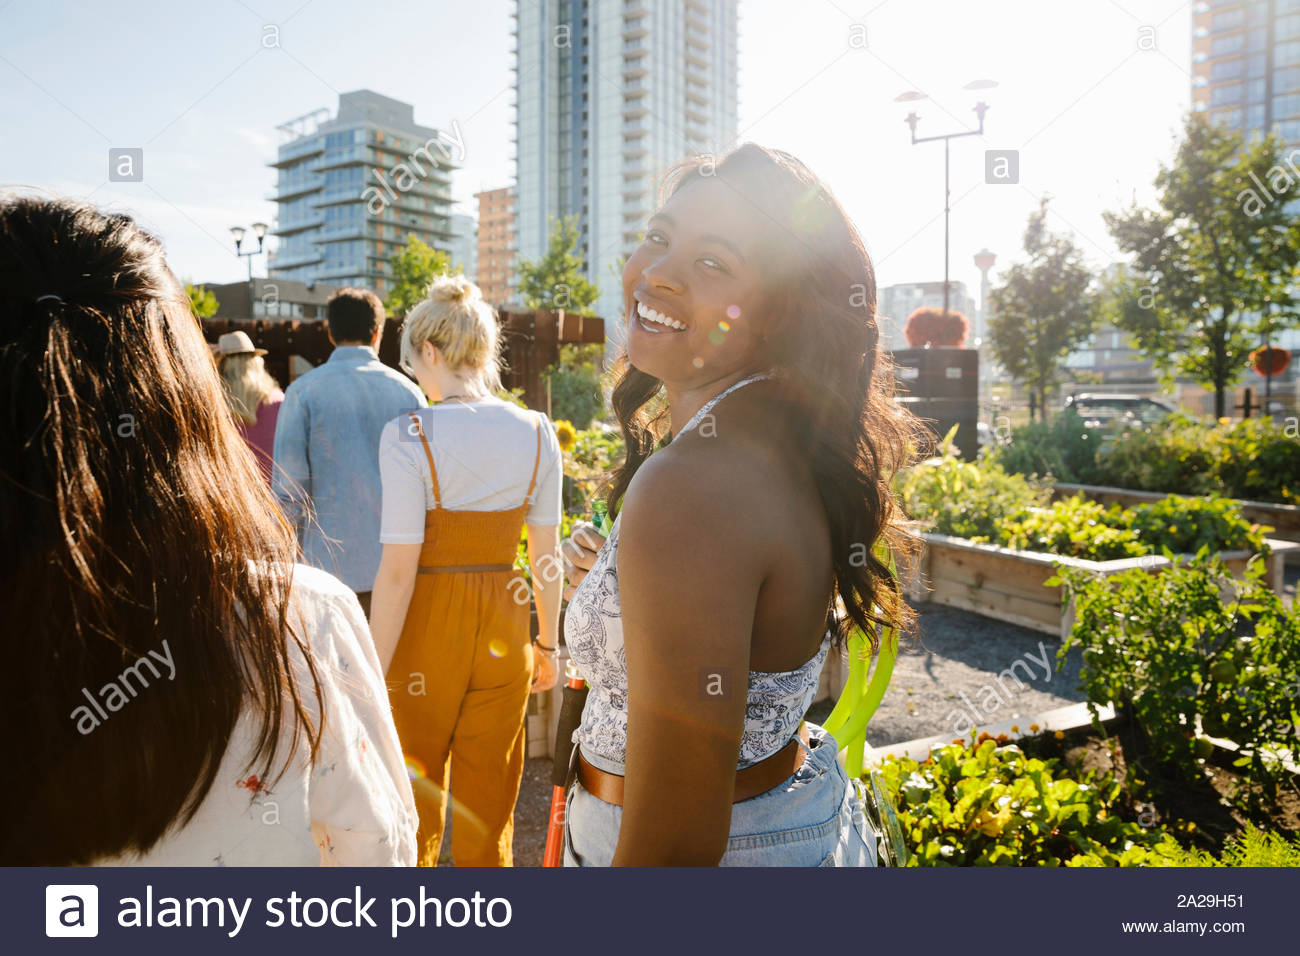 Portrait heureux, insouciant jeune femme avec des amis dans le jardin ensoleillé, communauté urbaine Banque D'Images